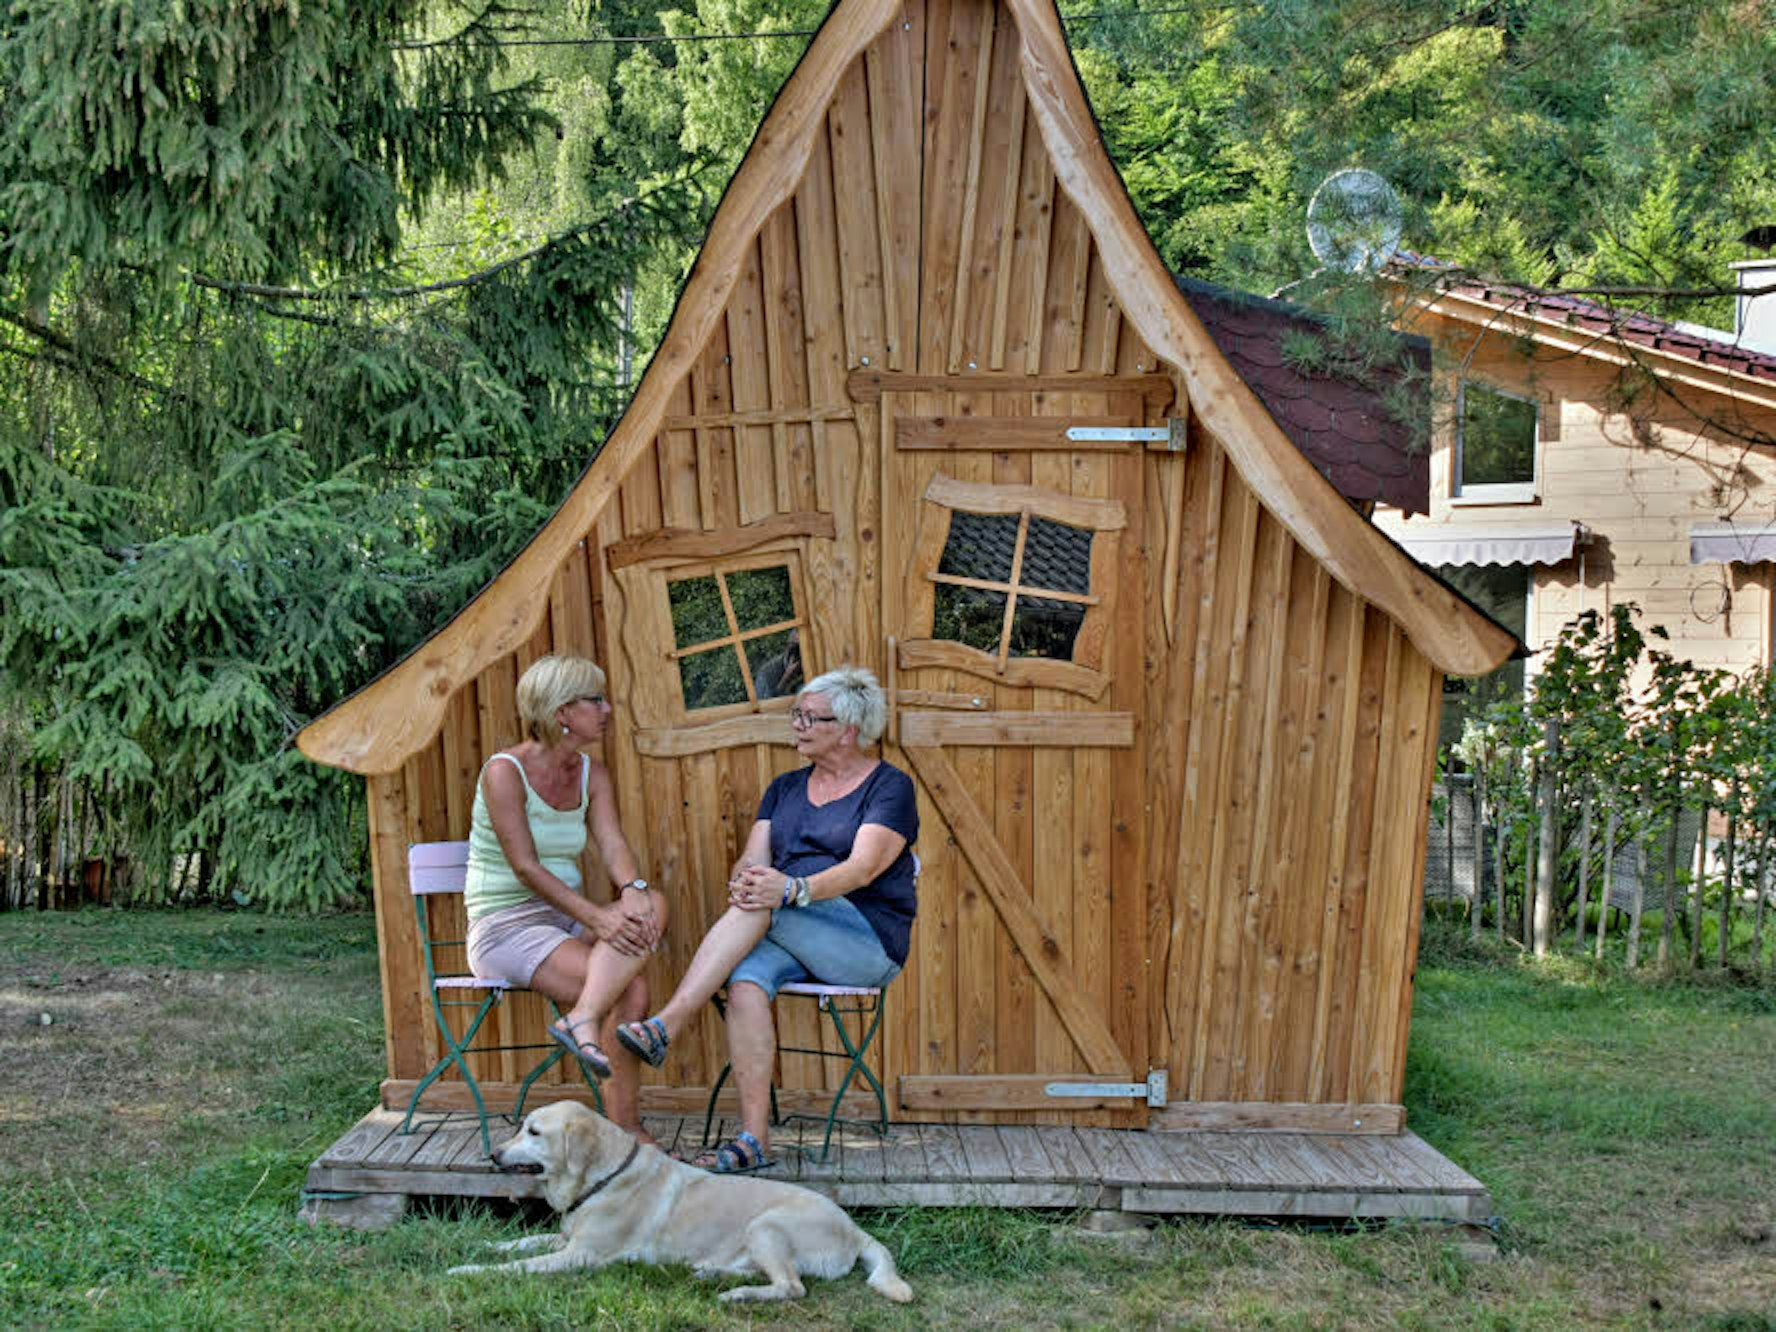 Immer etwas schief und skurril sind die kleinen Holzhäuser aus der Werkstatt des Zwei-Mann-Unternehmens „Hexenholz“.